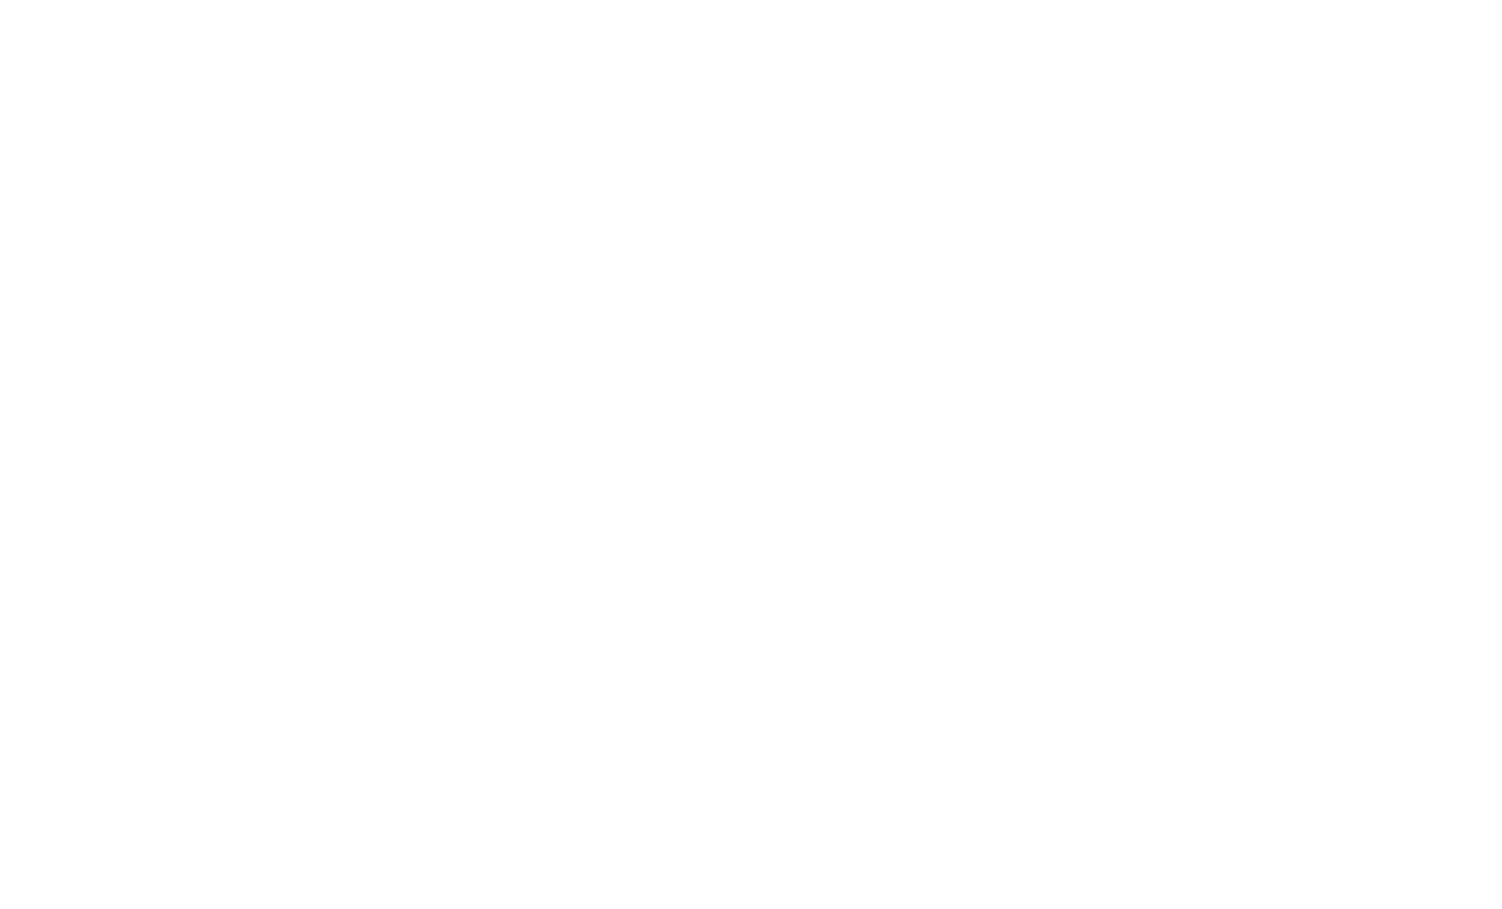 X-Pro7 | Assistência Notebook Campinas